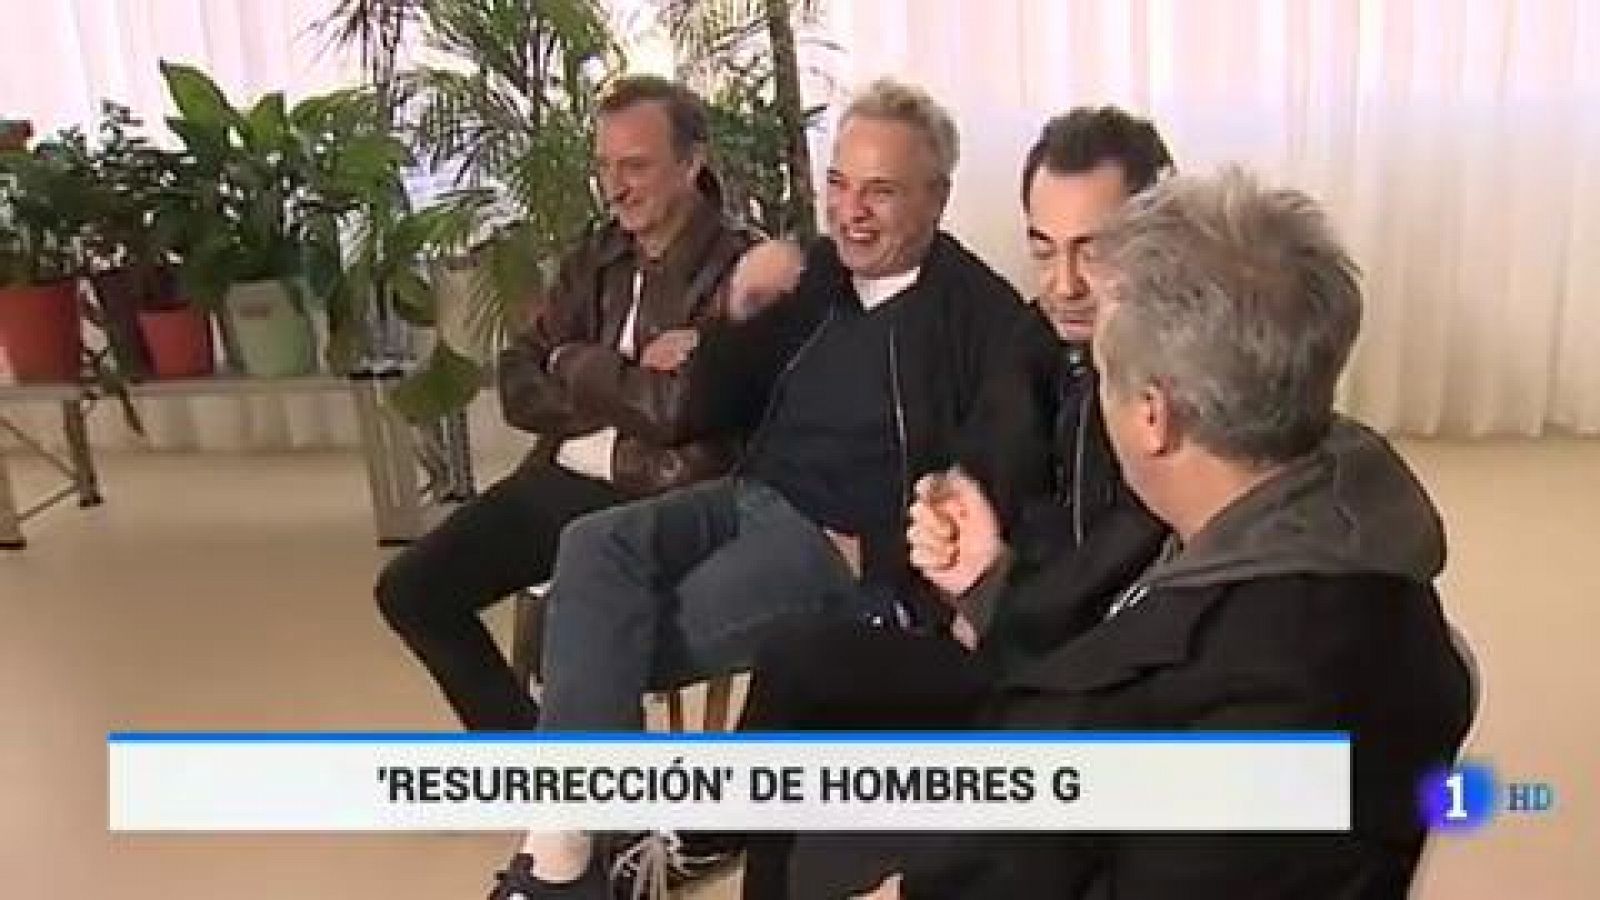 Telediario 1: Hombres G presenta su nuevo disco: "Resurrección" | RTVE Play